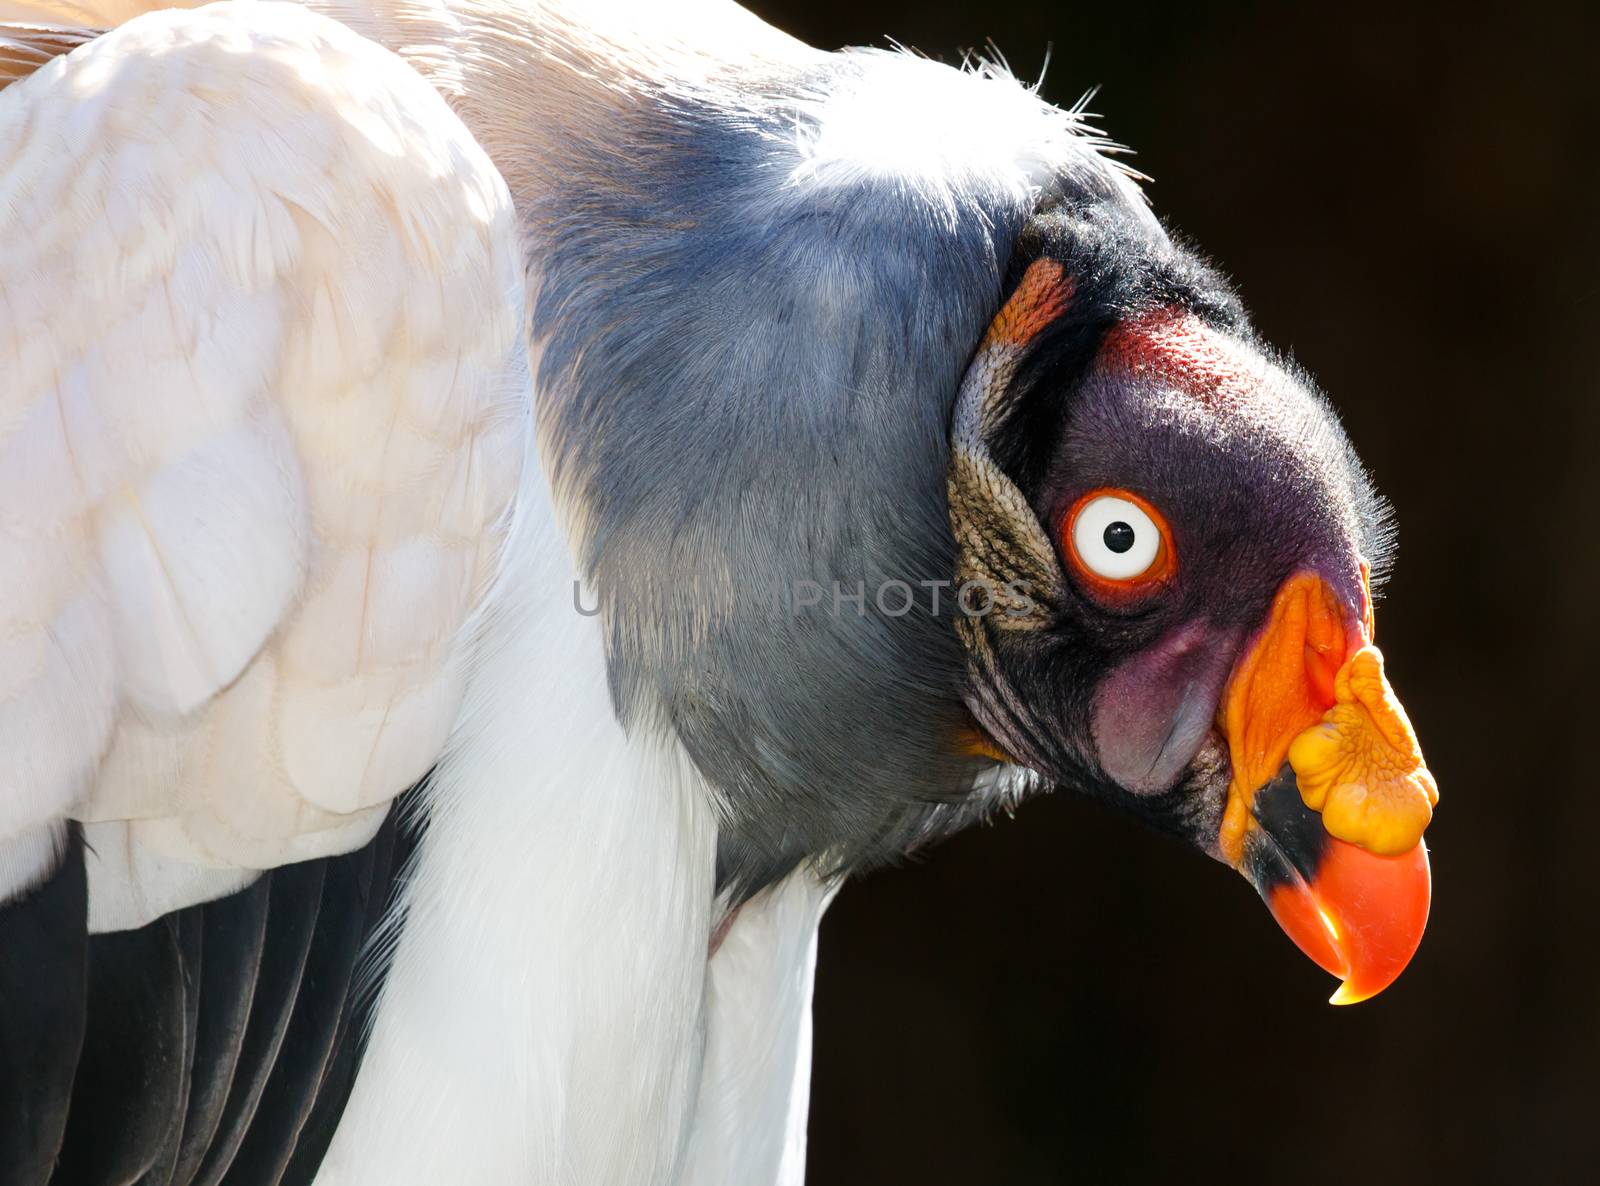 King Vulture Bird Portrait by fouroaks